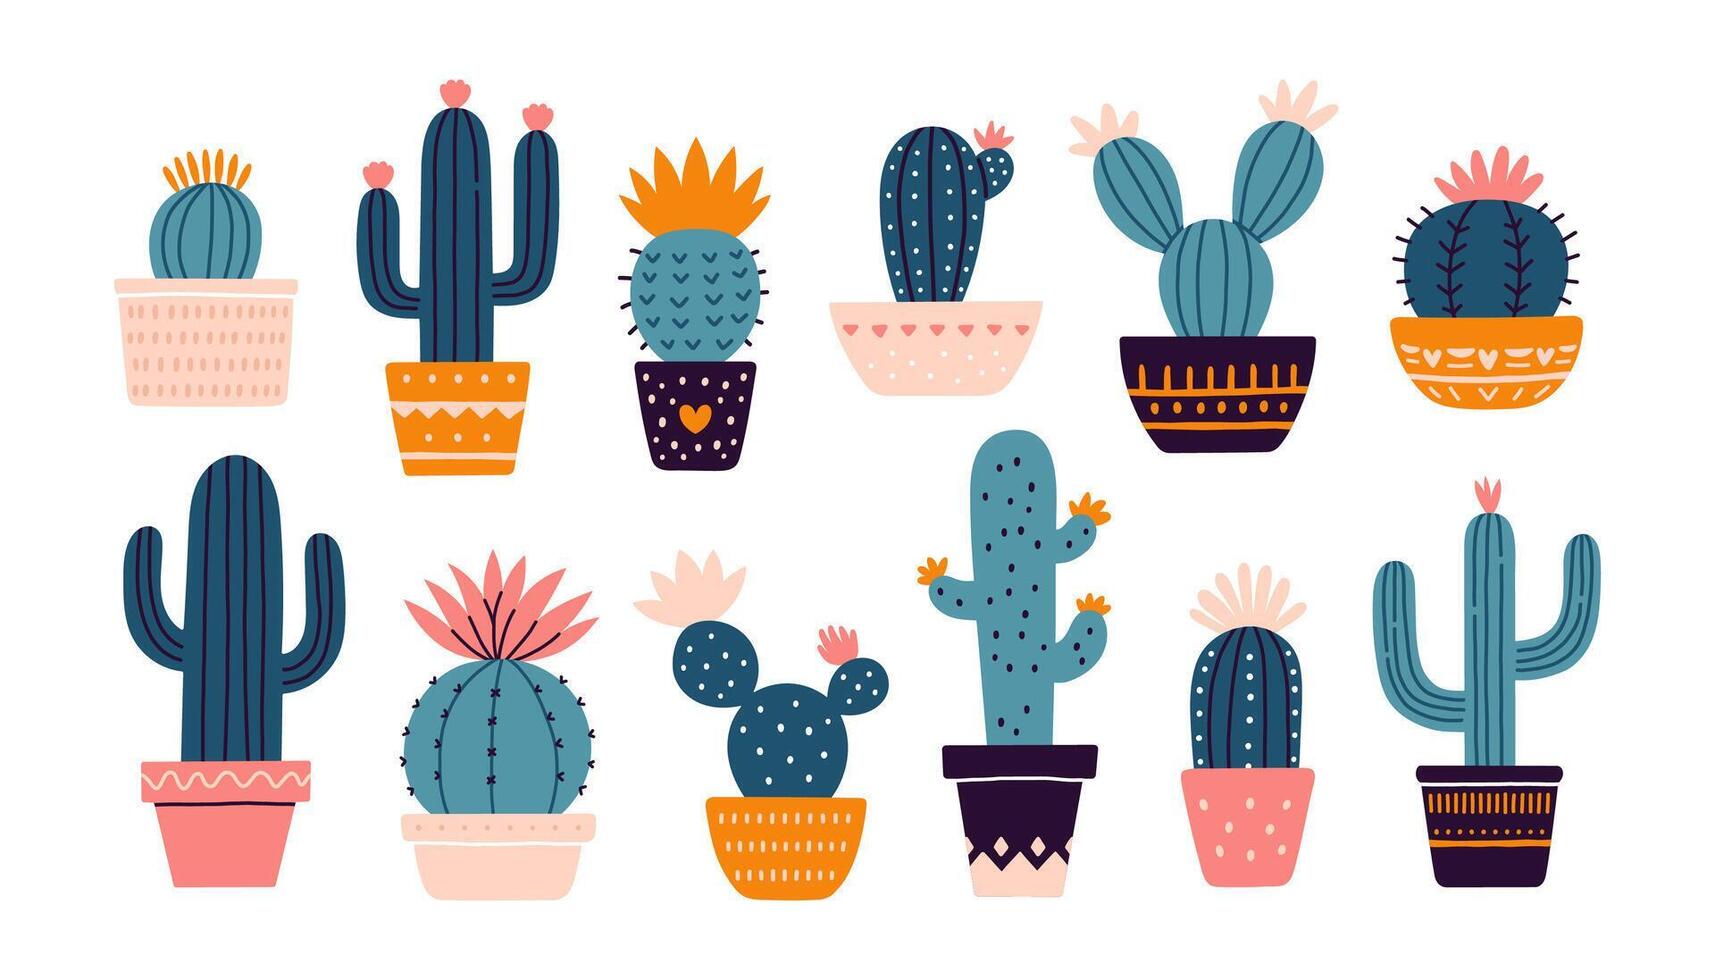 kaktus uppsättning. mexikansk kaktus i pott. öken- taggig växt, mexico kaktusar blomma och tropisk Hem växter eller arizona sommar klimat trädgård kaktusar. flora isolerat vektor klistermärken samling